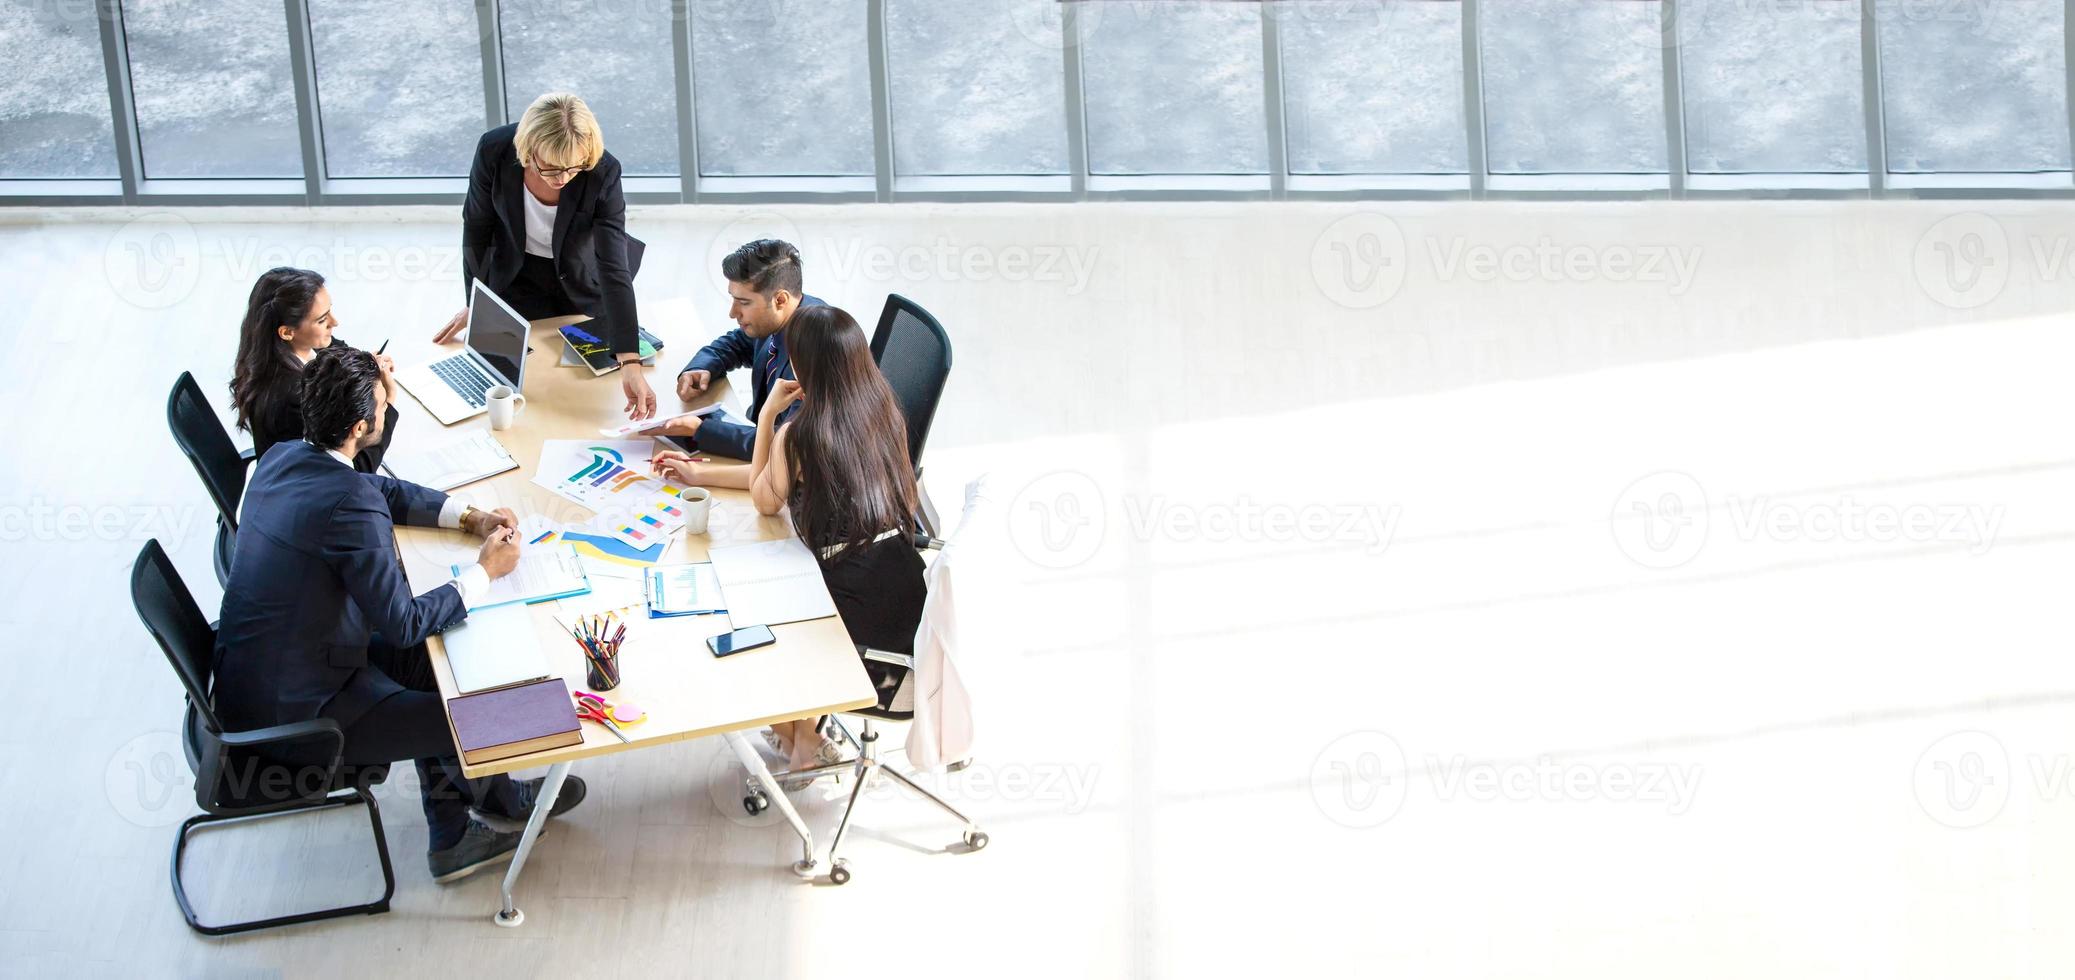 bovenaanzicht van een groep multi-etnische drukke mensen die in een kantoor werken, luchtfoto met zakenman en zakenvrouw die rond een vergadertafel zitten met kopieerruimte, zakelijke bijeenkomst concept. foto